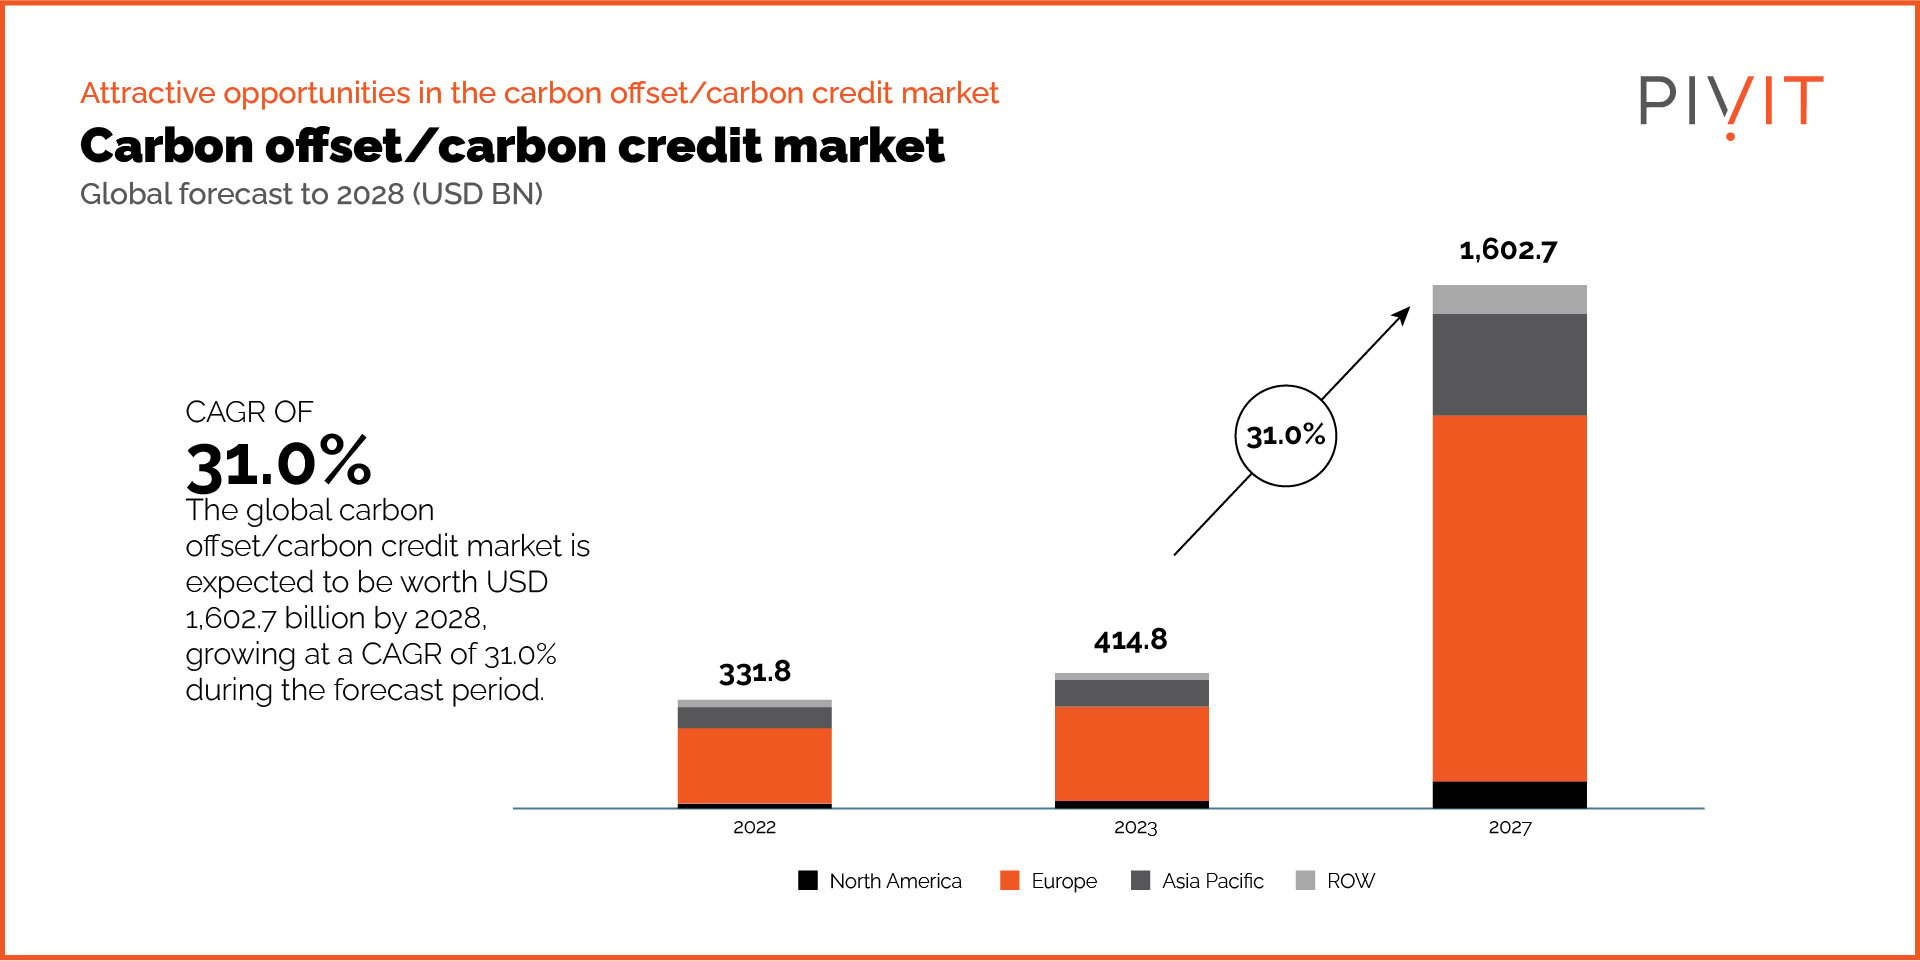 Carbon offset/carbon credit market - global forecase to 2028